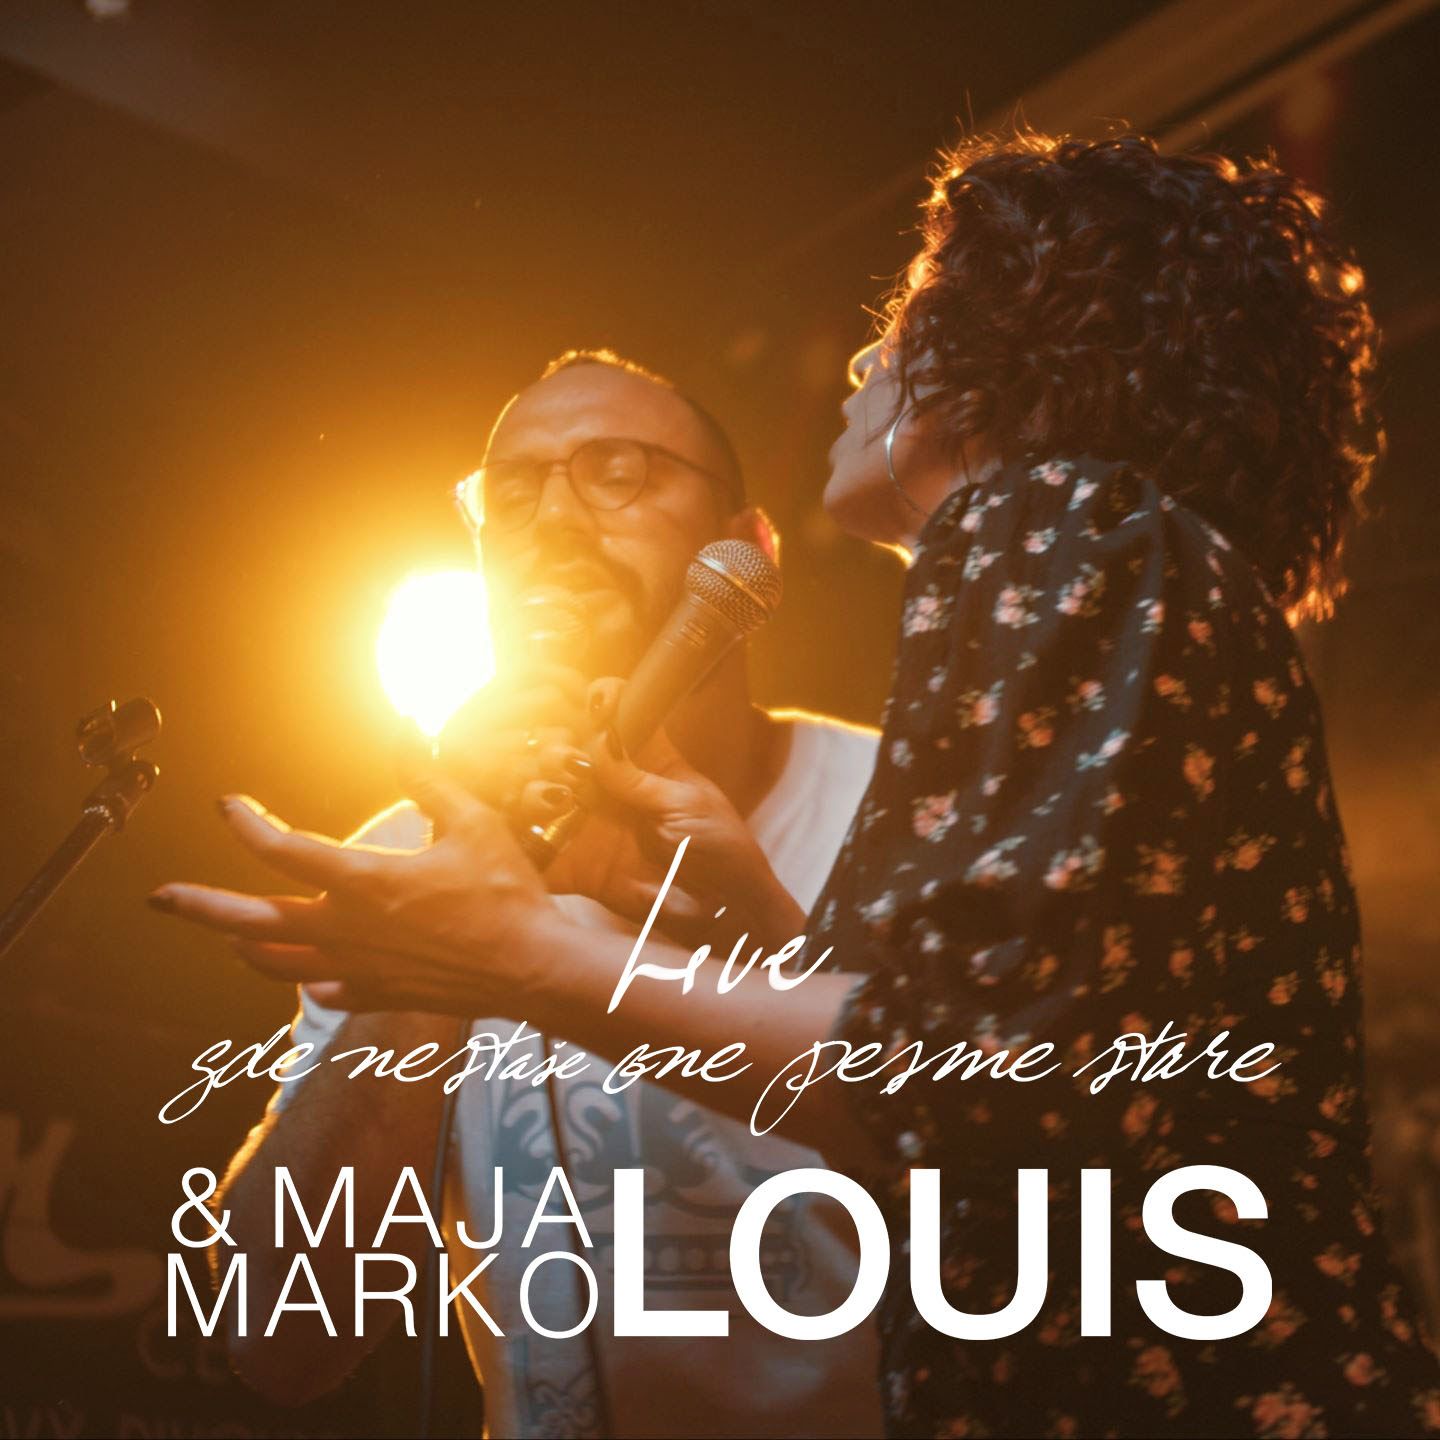 Maja i Marko Louis su obradili očevu čuvenu pesmu 